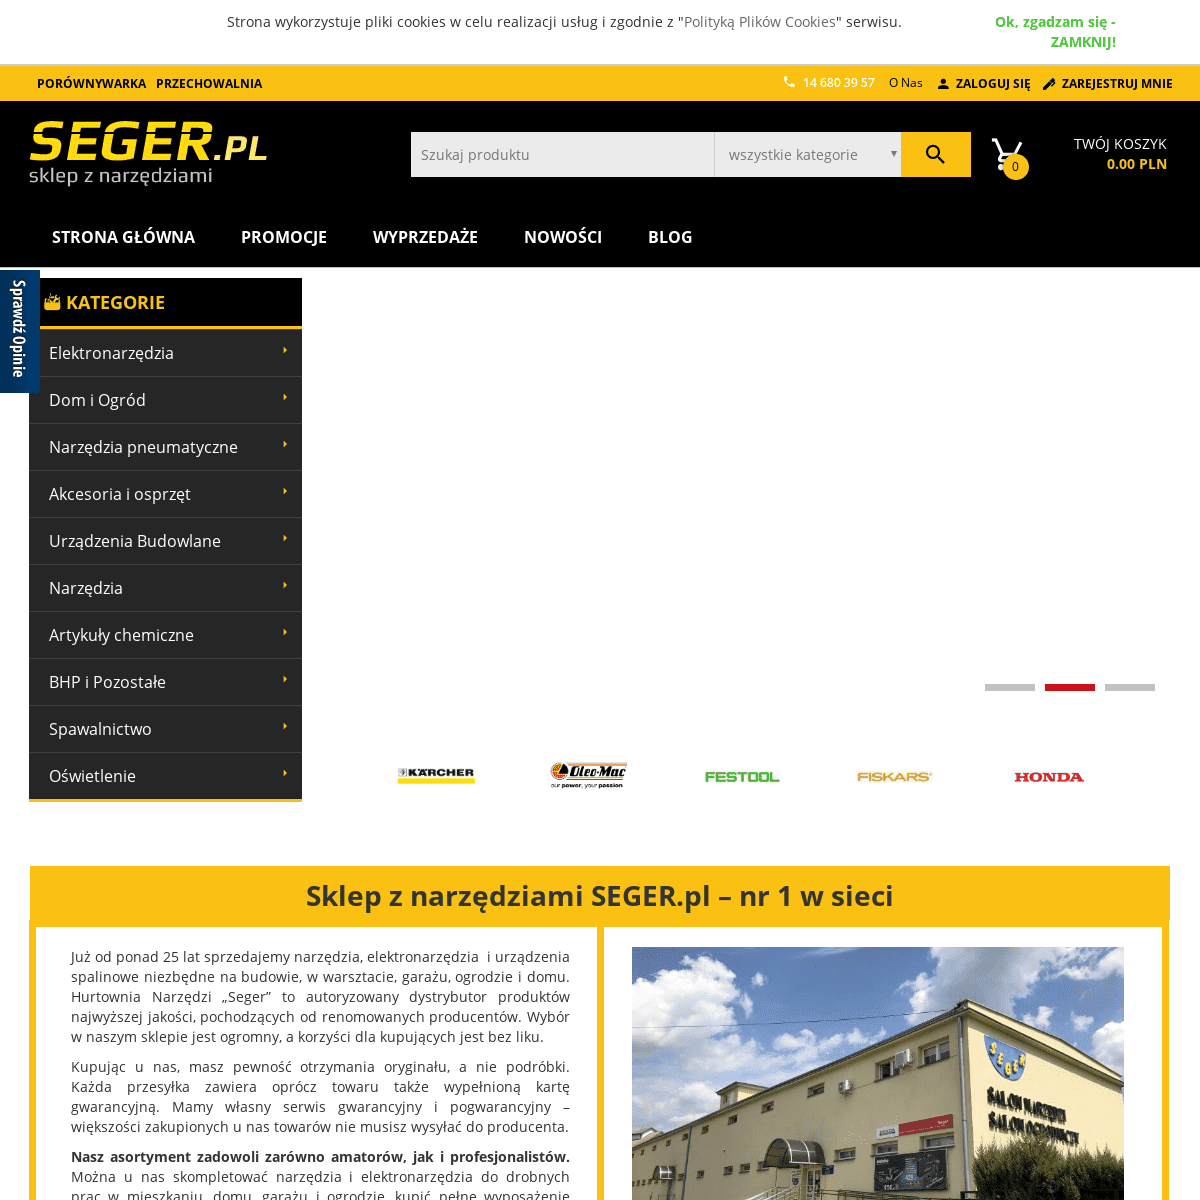 Internetowy sklep z narzędziami i elektronarzędziami | Seger.pl